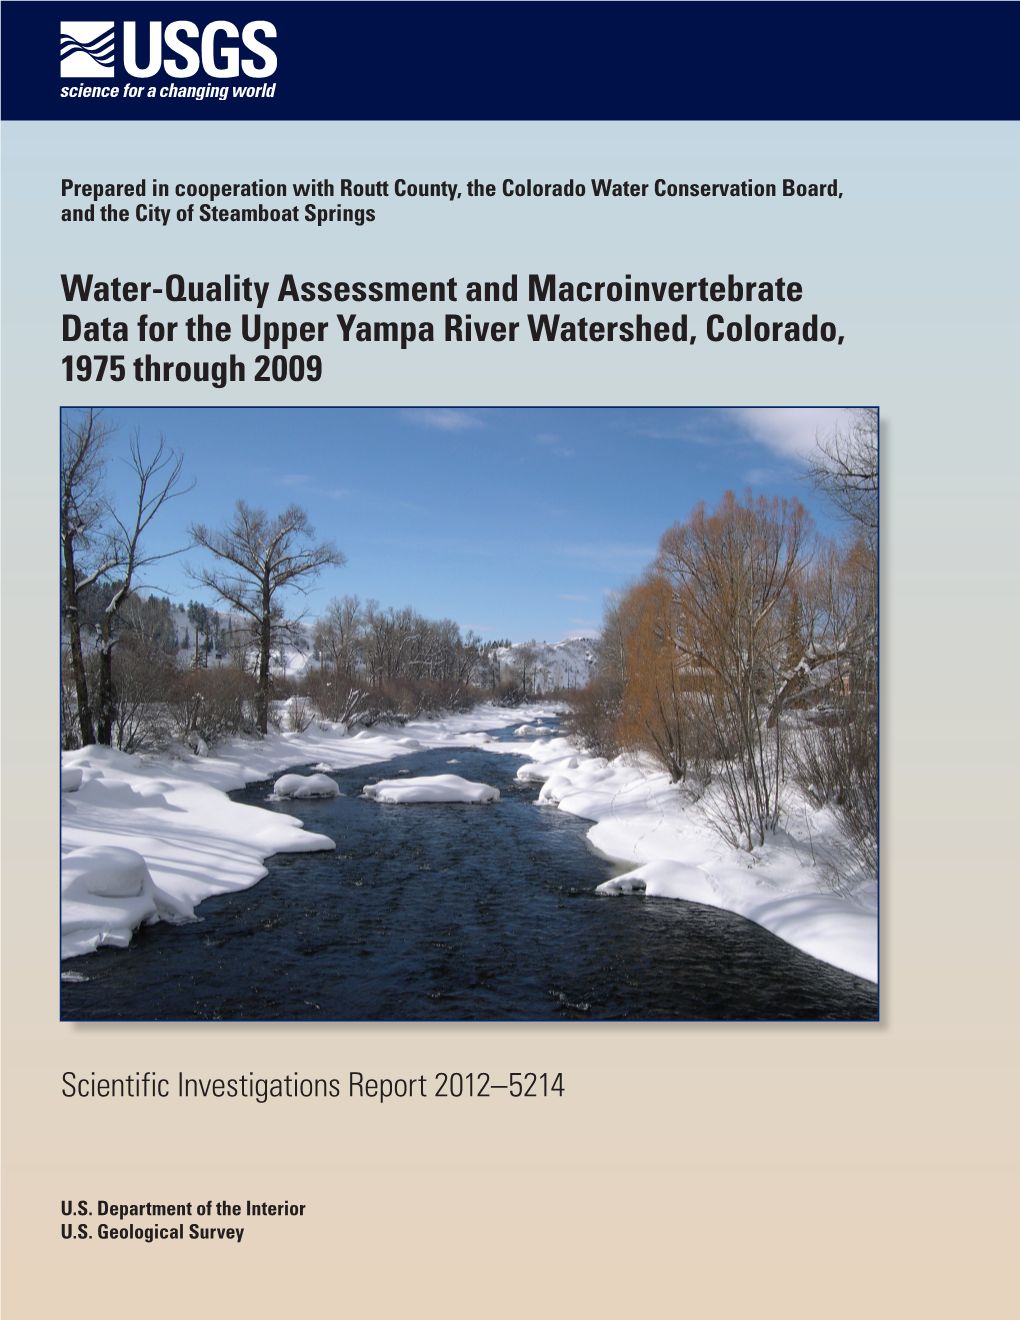 USGS Yampa River Study